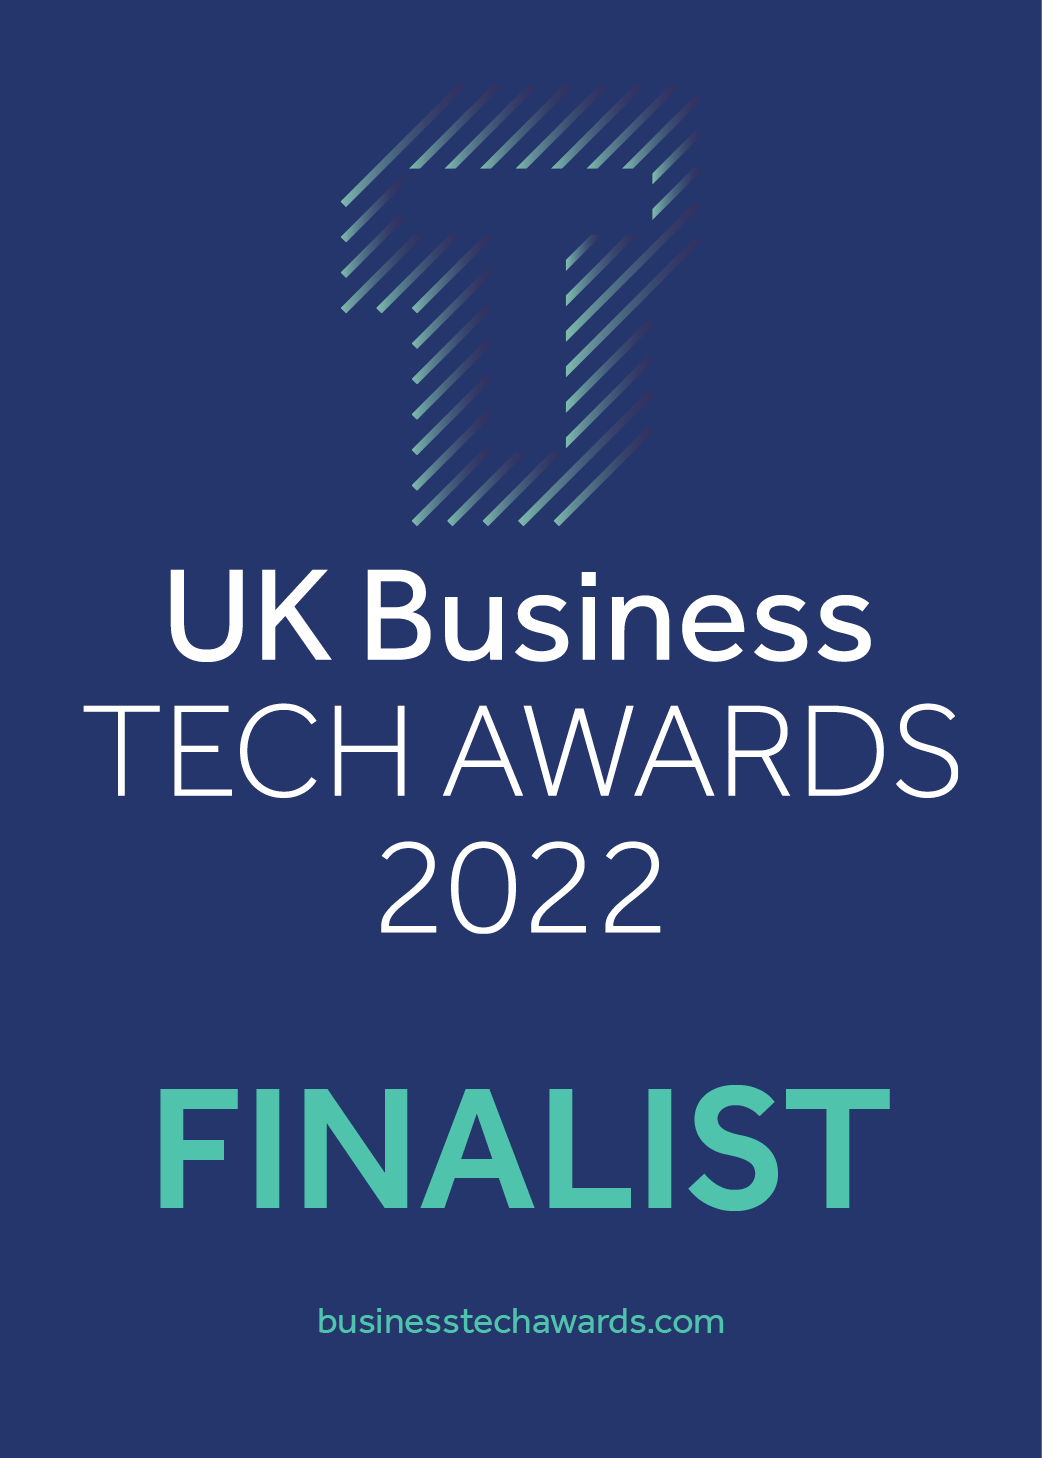 UK Business Tech Awards 2022 Finalist logo